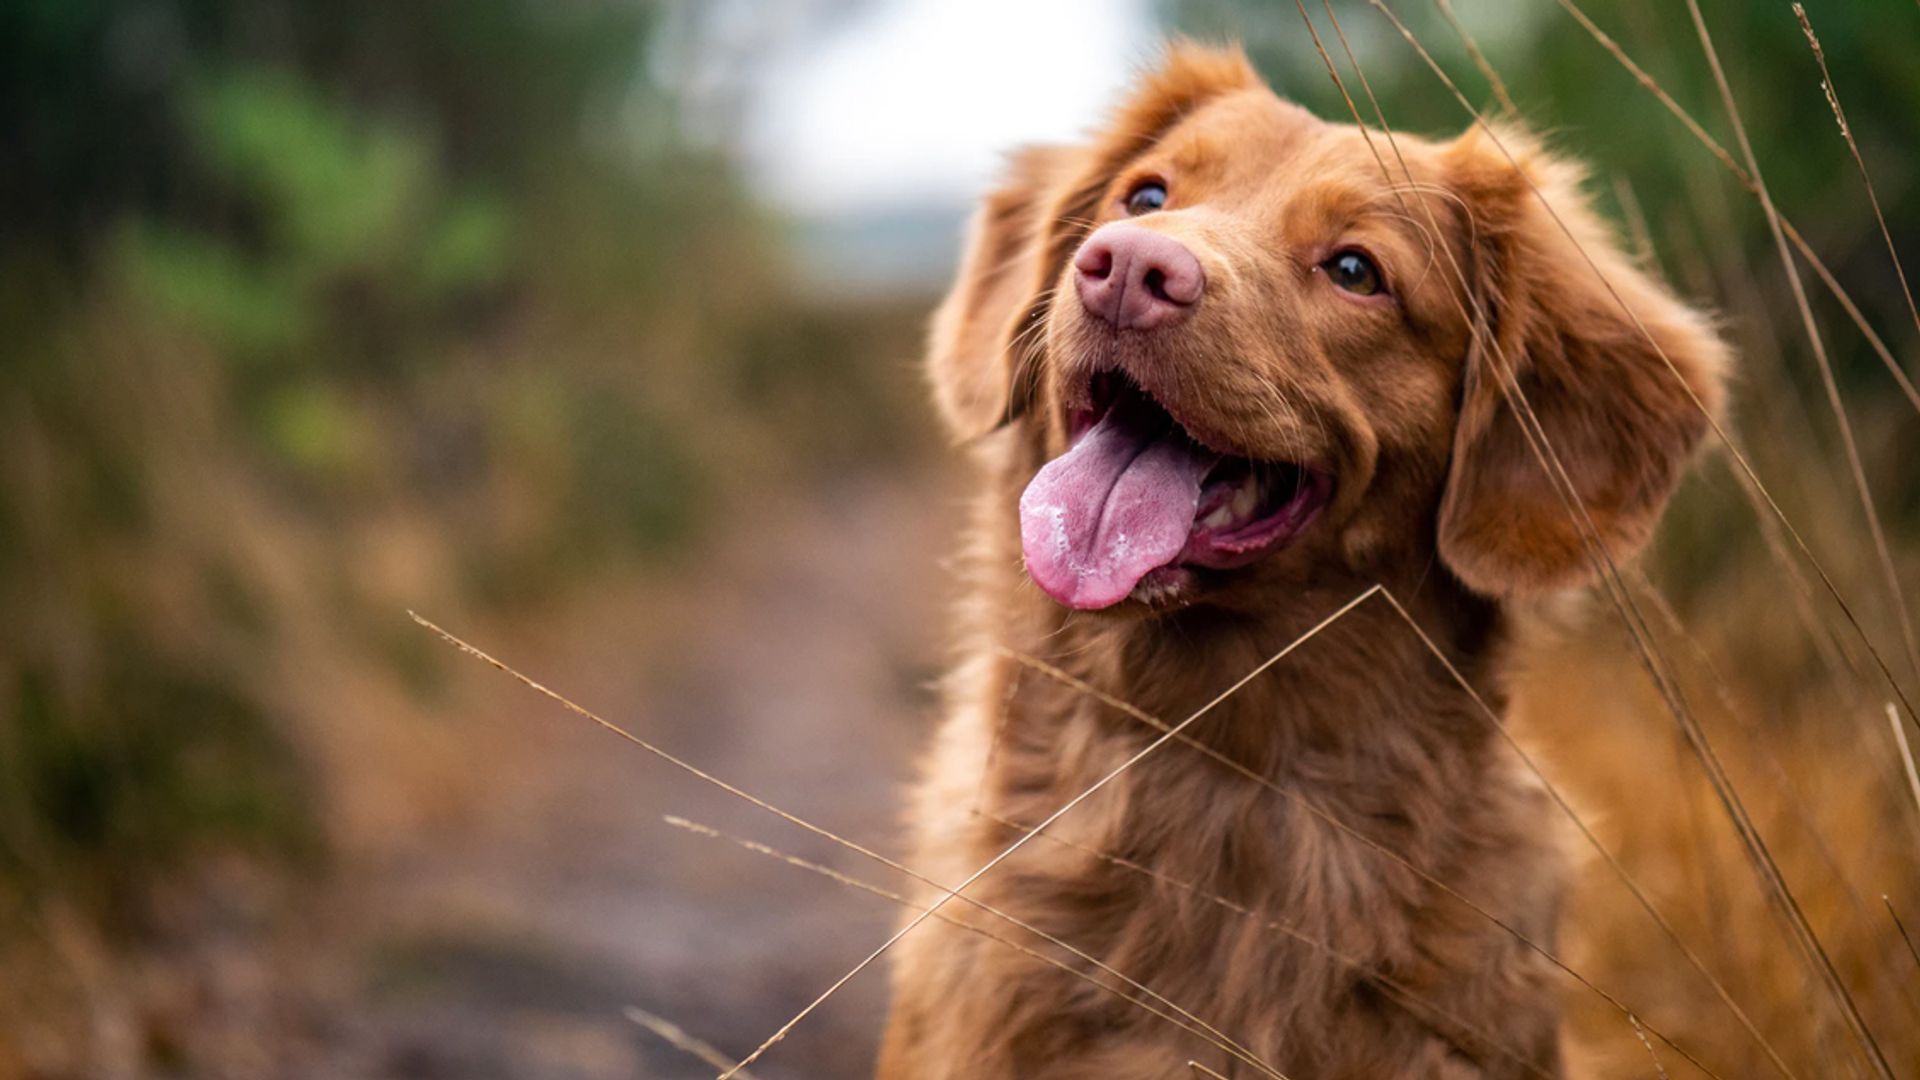 Kwaadaardige tumor Stuiteren Moreel onderwijs Ontstekingsremmers voor honden: wat moet je als baasje weten? - Kassa -  BNNVARA